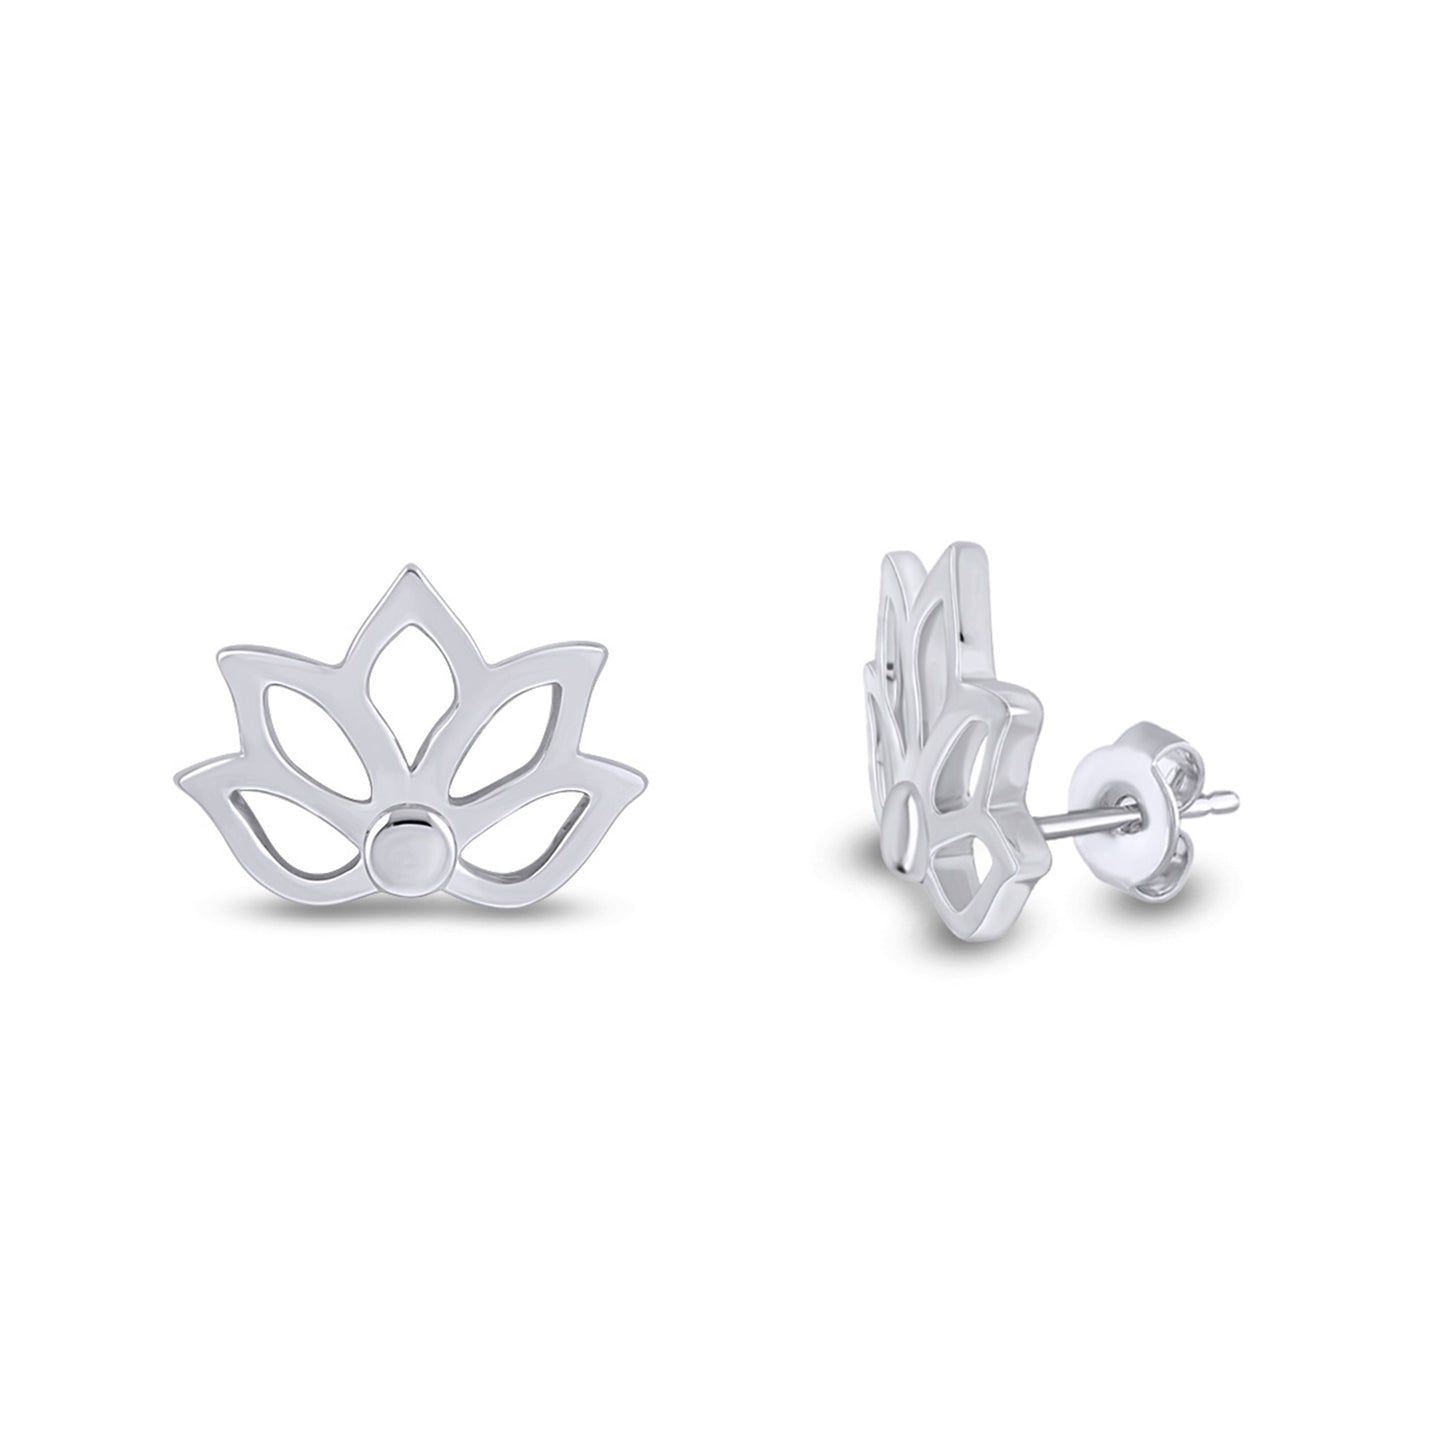 Lotus Flower Stud Earrings For Women in 925 Sterling Silver Push Back